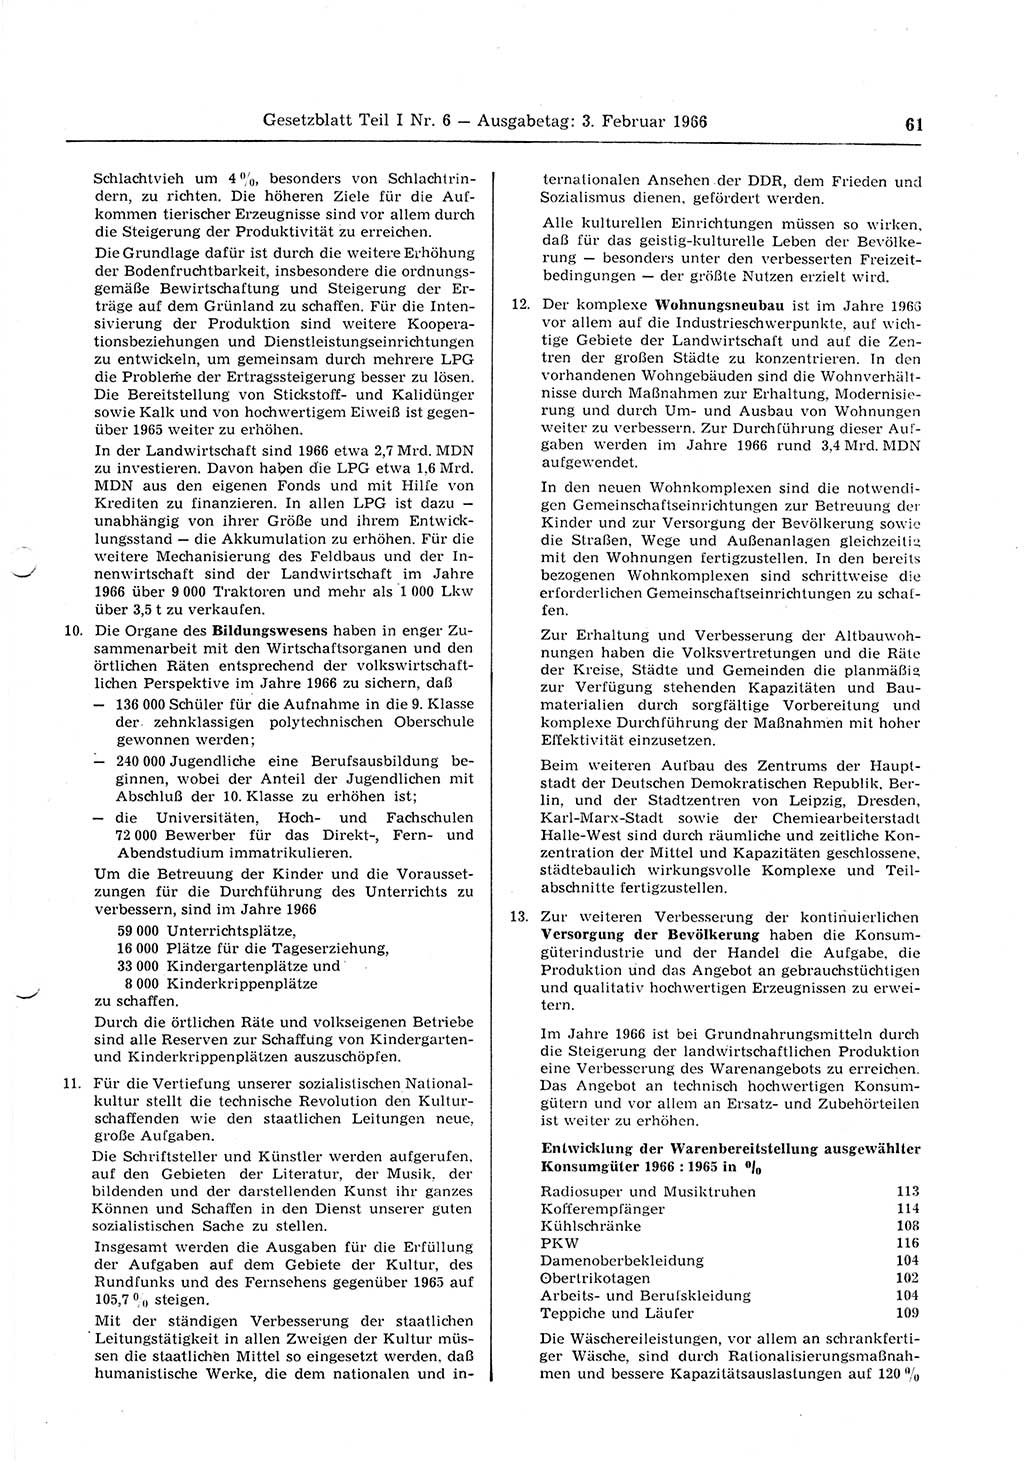 Gesetzblatt (GBl.) der Deutschen Demokratischen Republik (DDR) Teil Ⅰ 1966, Seite 61 (GBl. DDR Ⅰ 1966, S. 61)